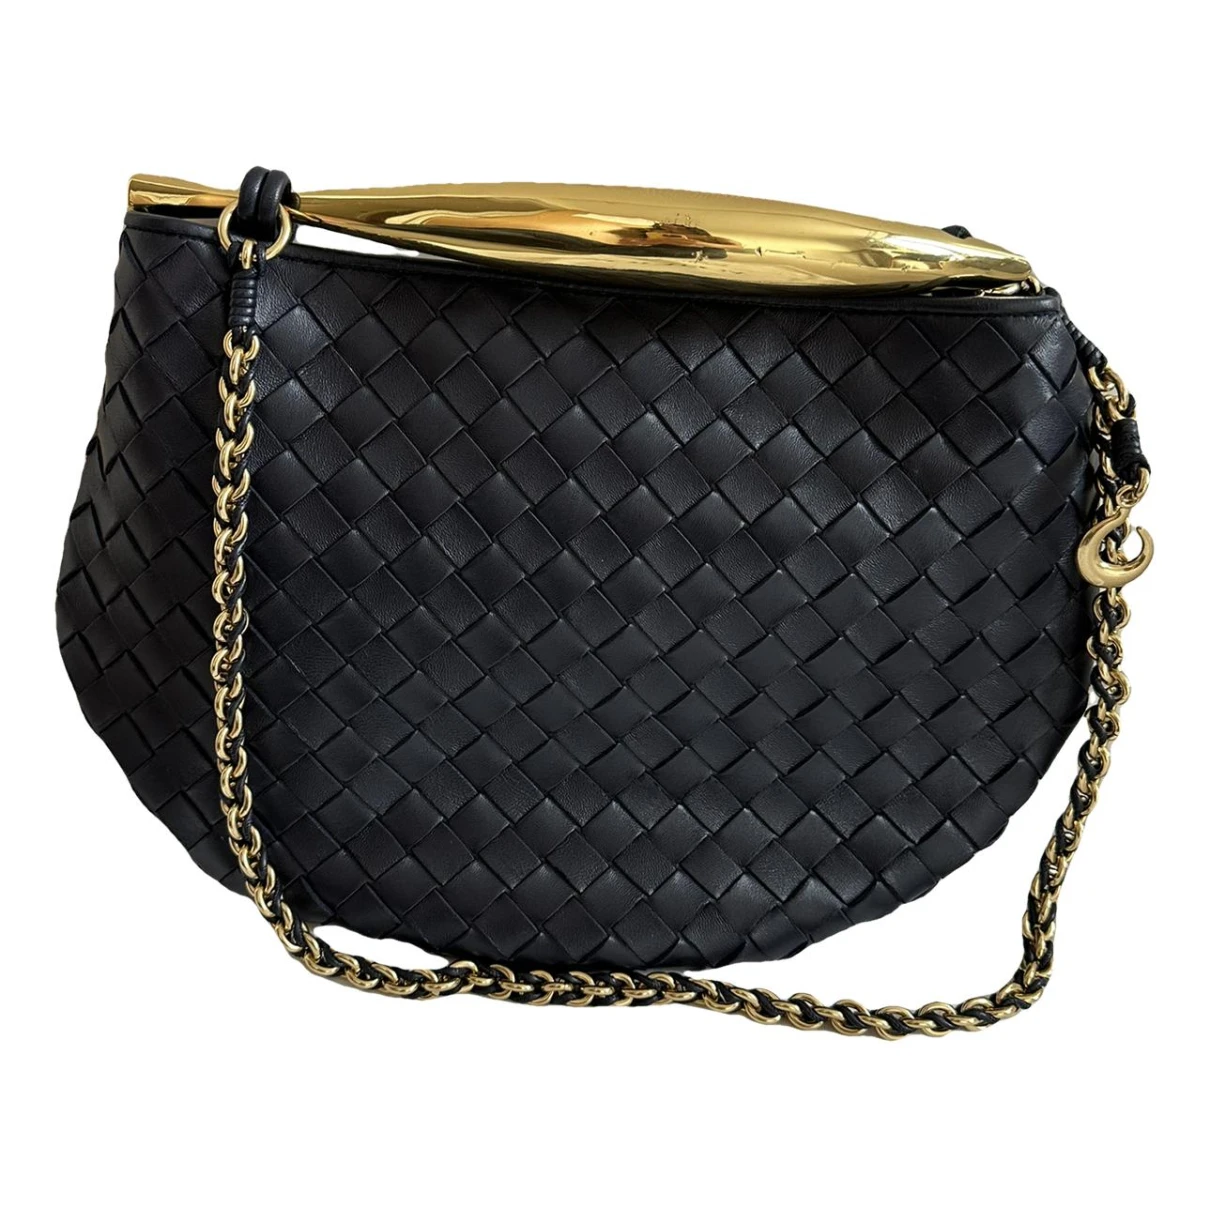 Pre-owned Bottega Veneta Sardine Leather Handbag In Navy